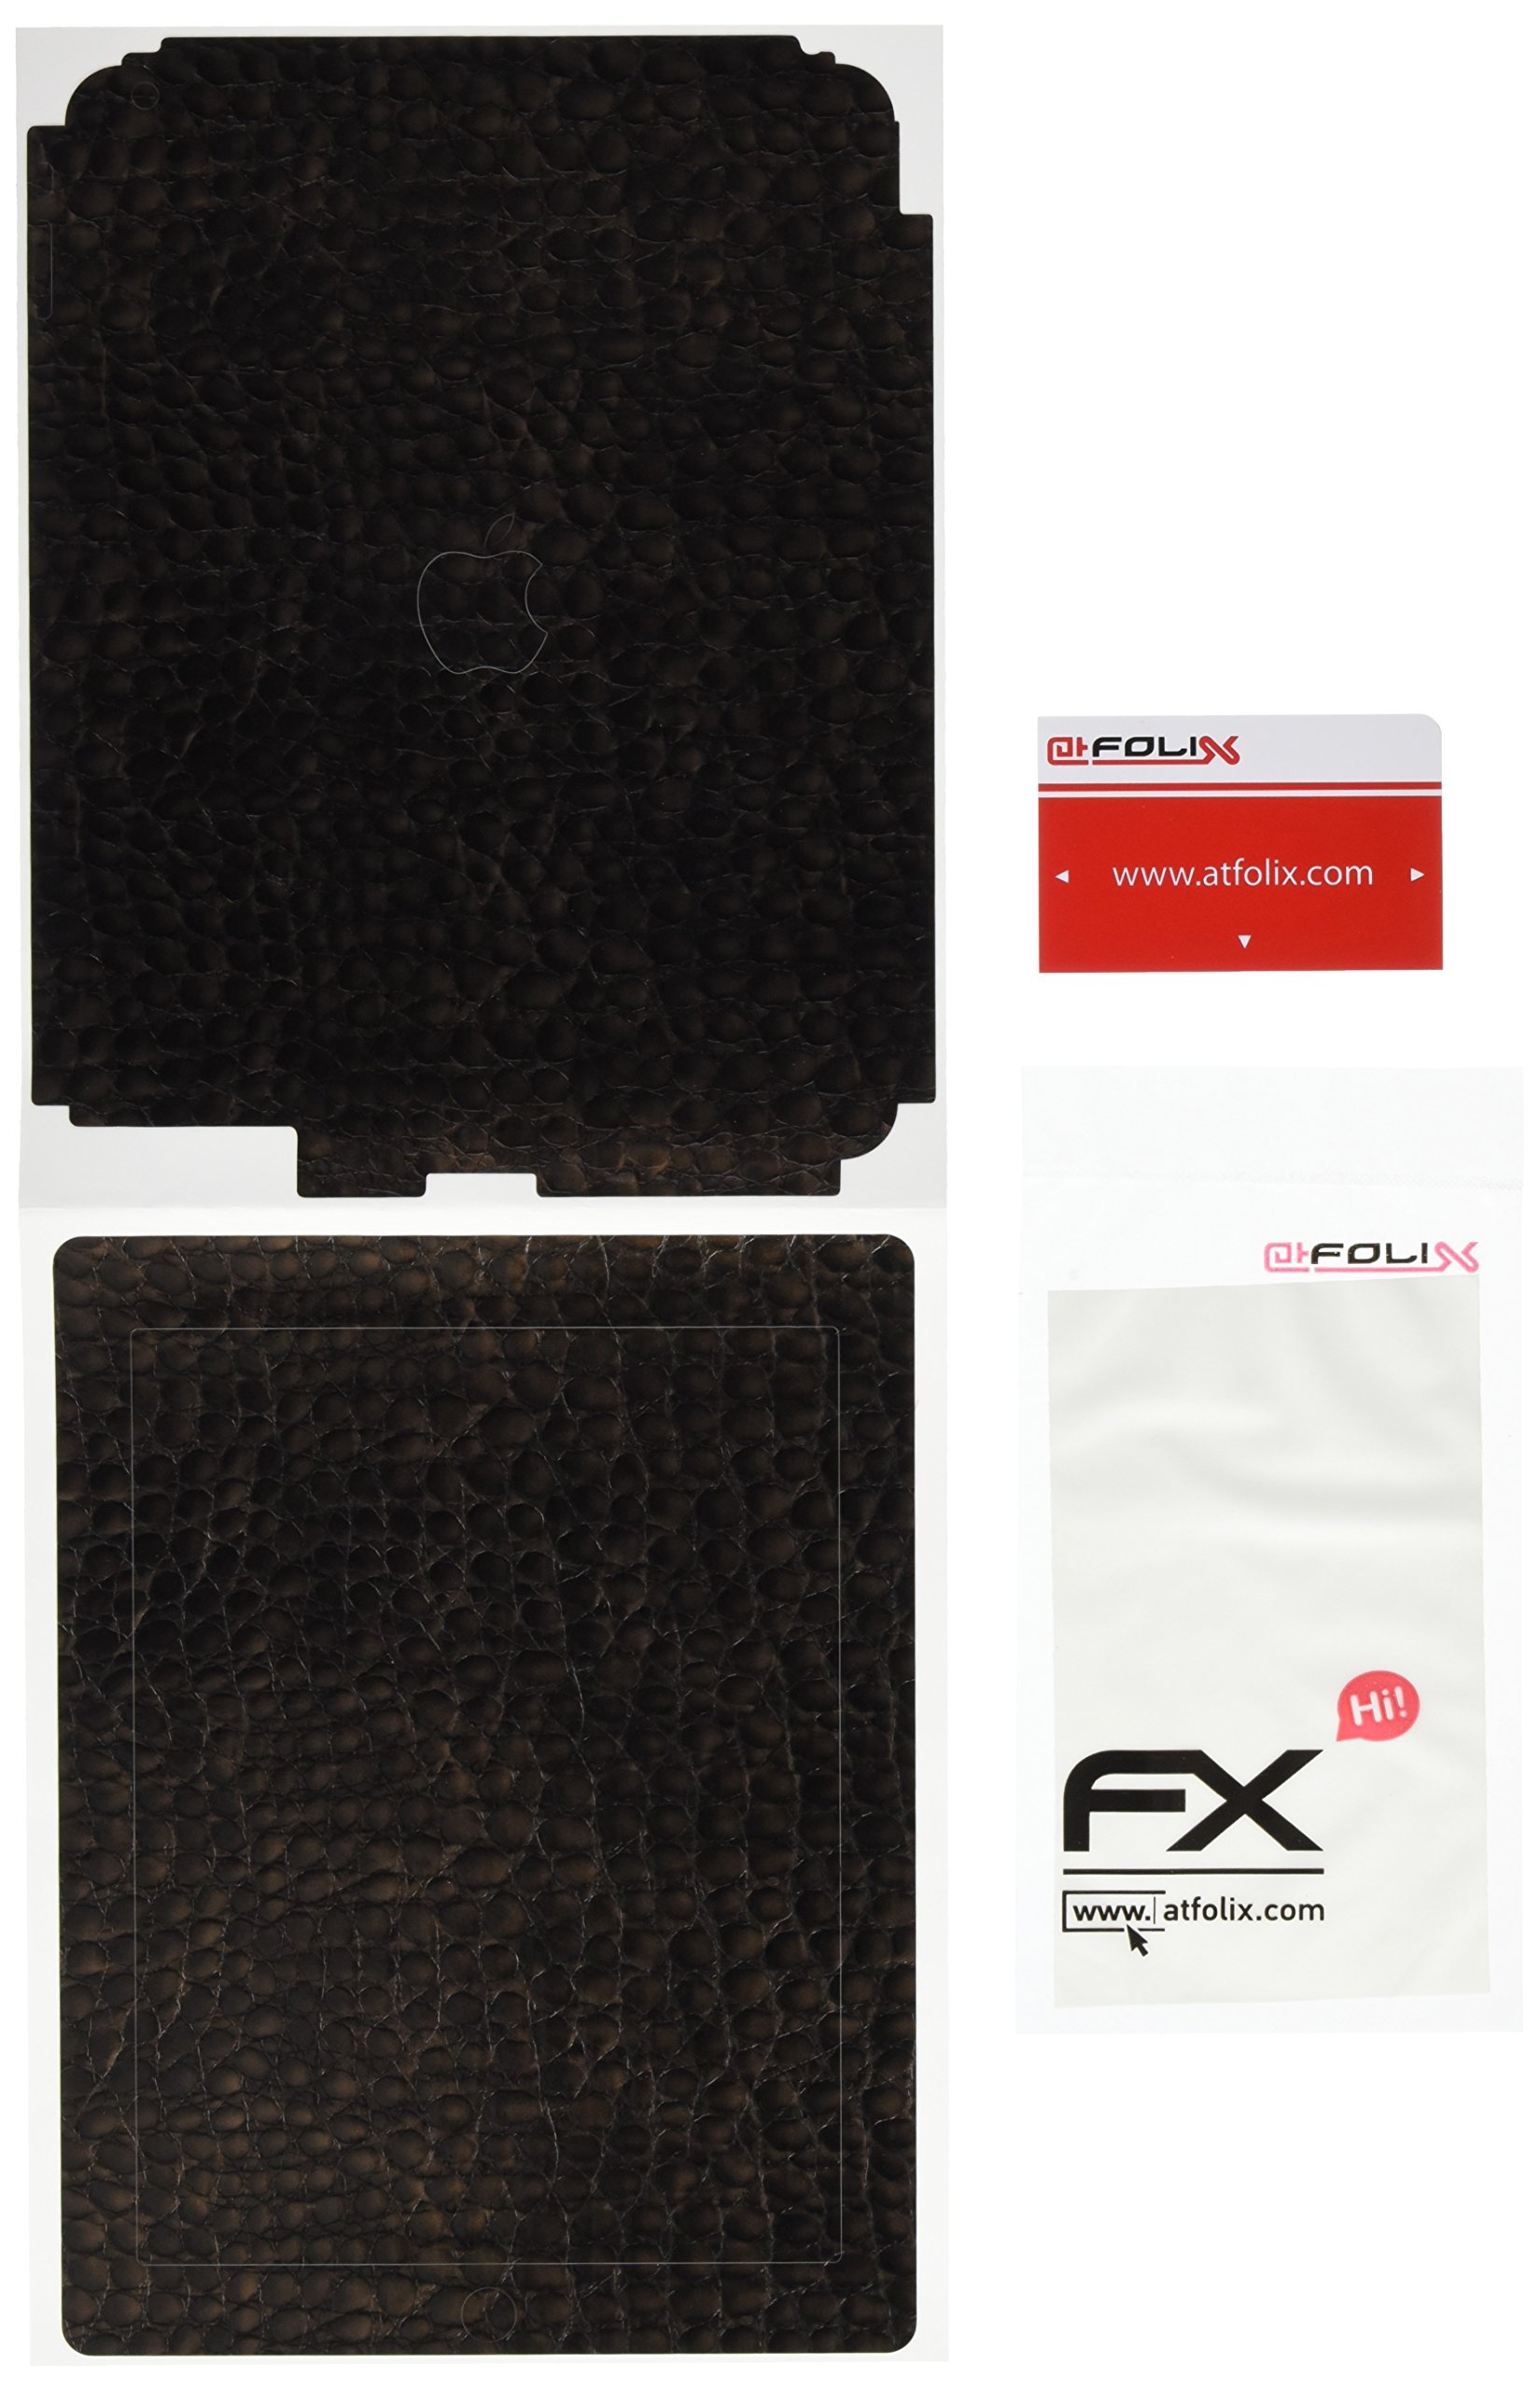 atFoliX FX-Everglade-Brown Designfolie für Apple iPad 4/3/2